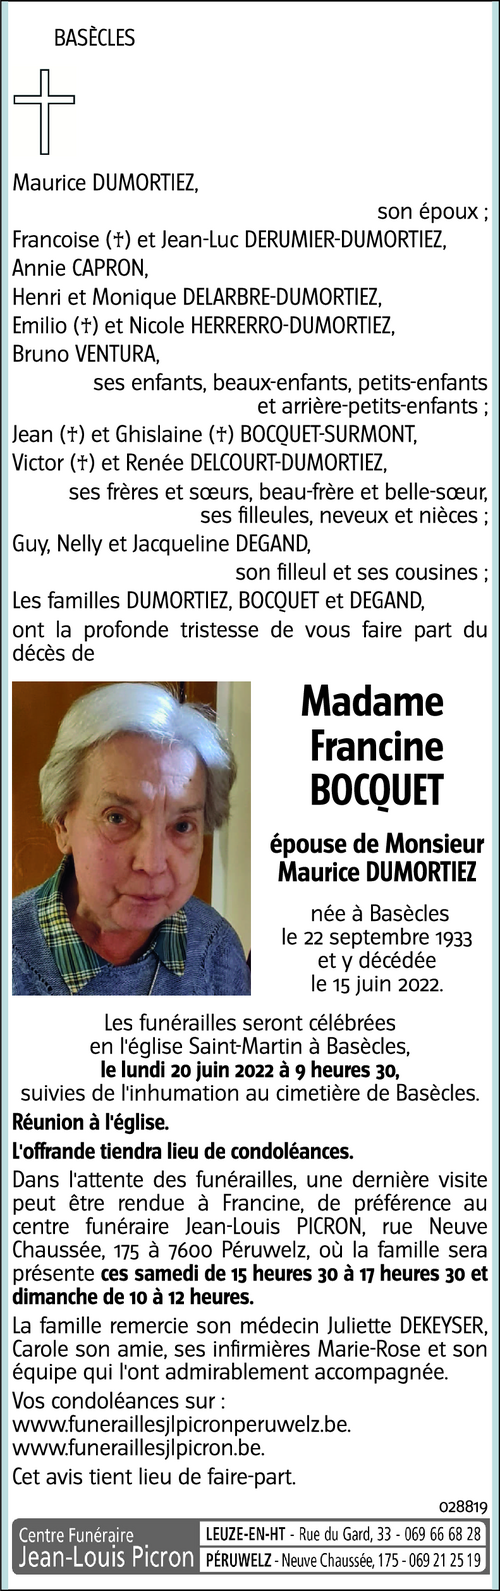 Francine BOCQUET